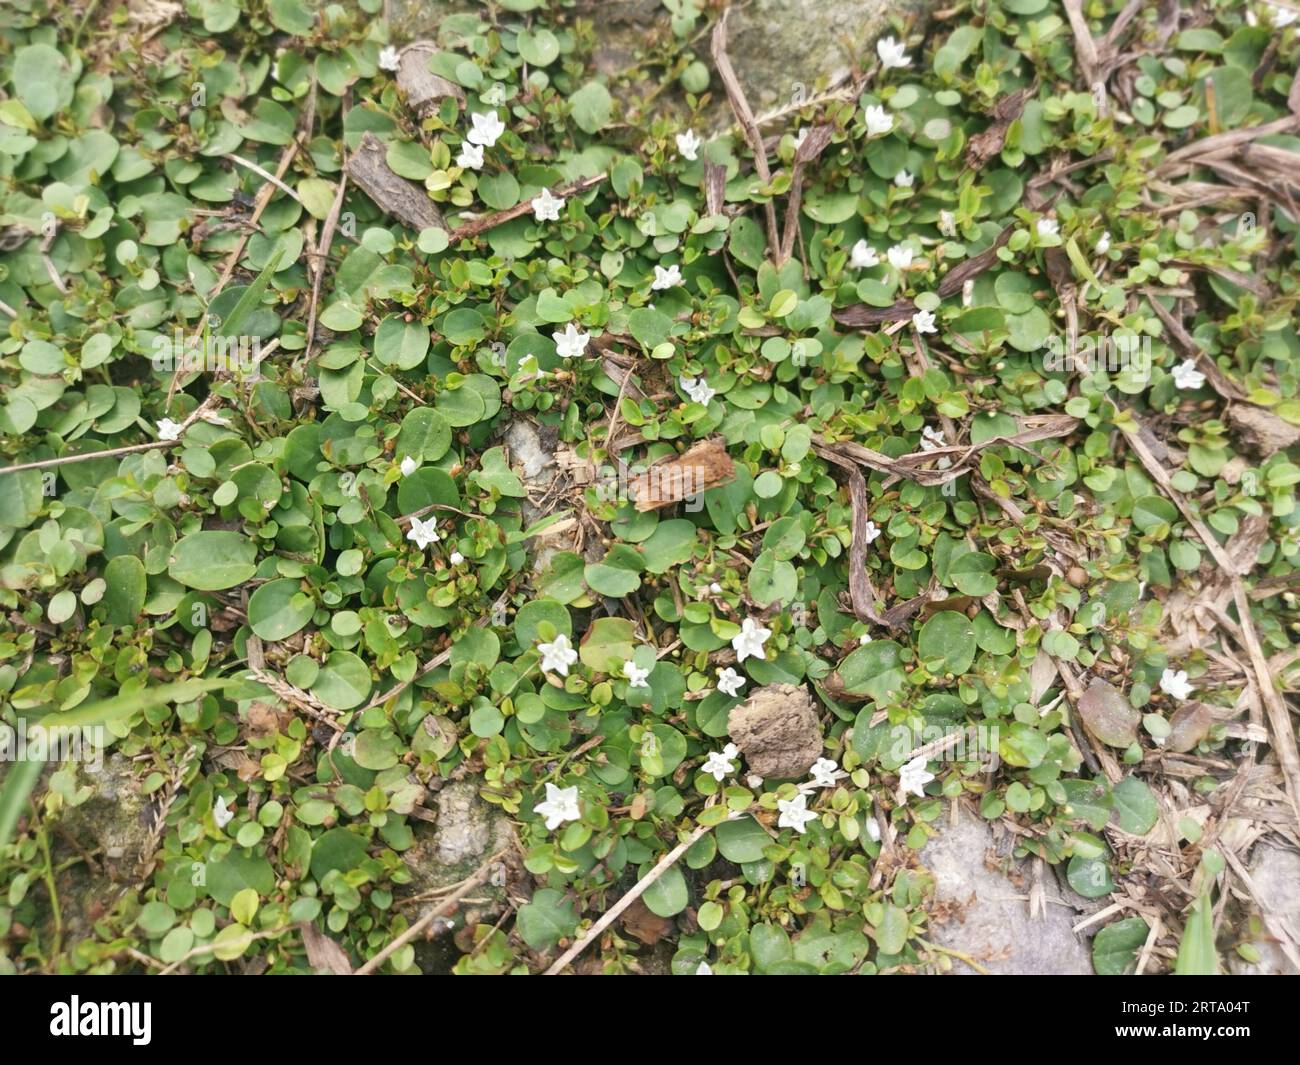 Evolvulus nummularius weed on the wild field Stock Photo